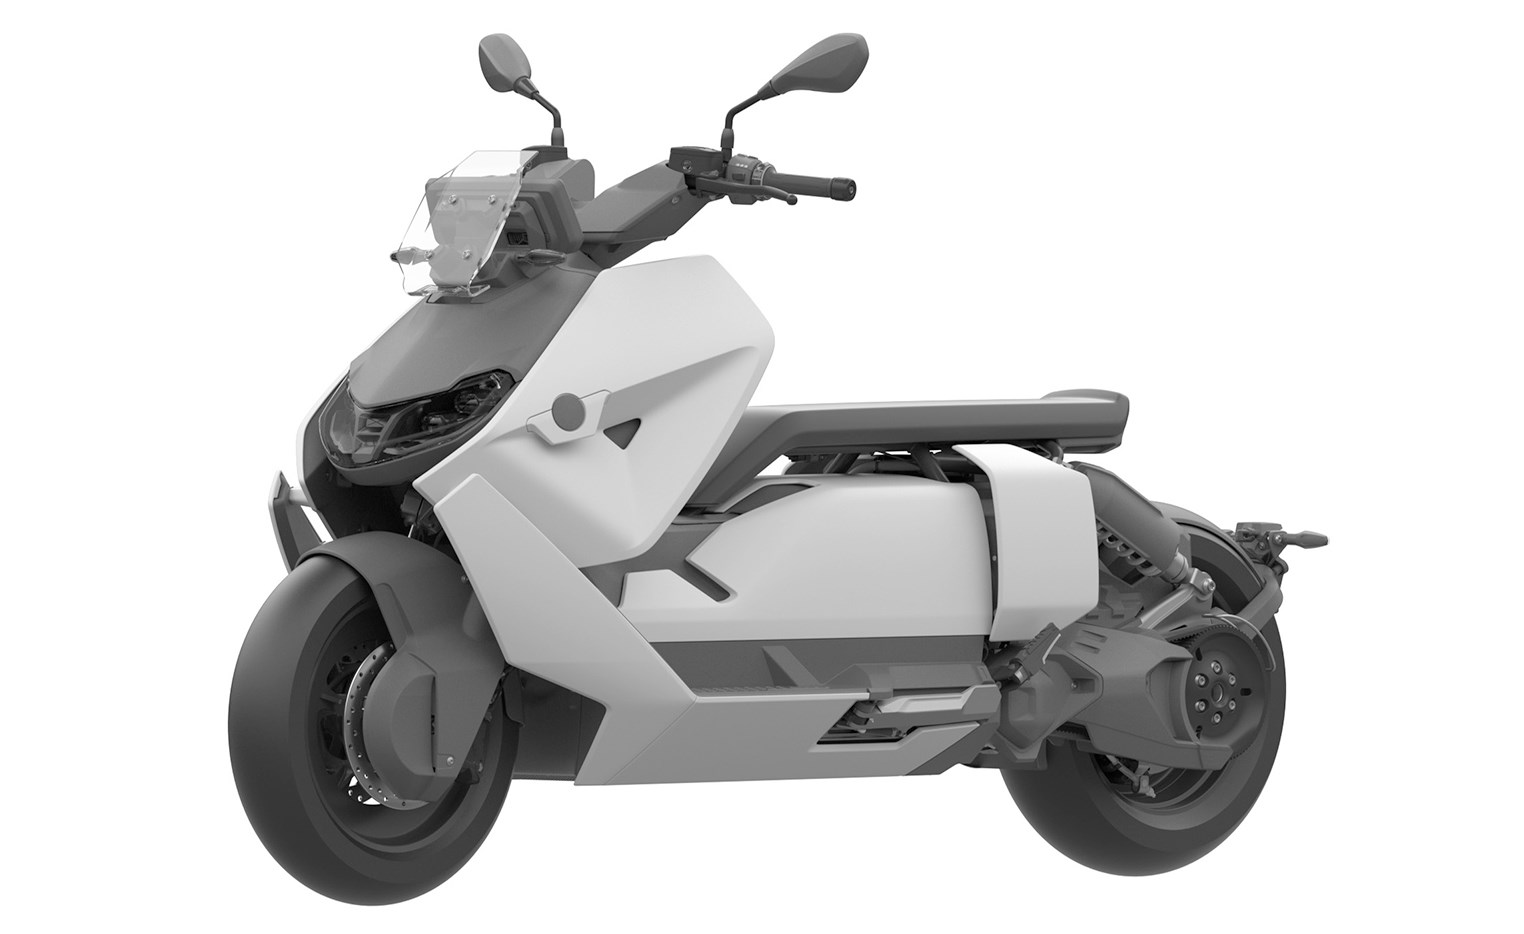 Yeni görseller BMW CE 04 elektrikli motosikletin üretime yaklaştığını gösteriyor